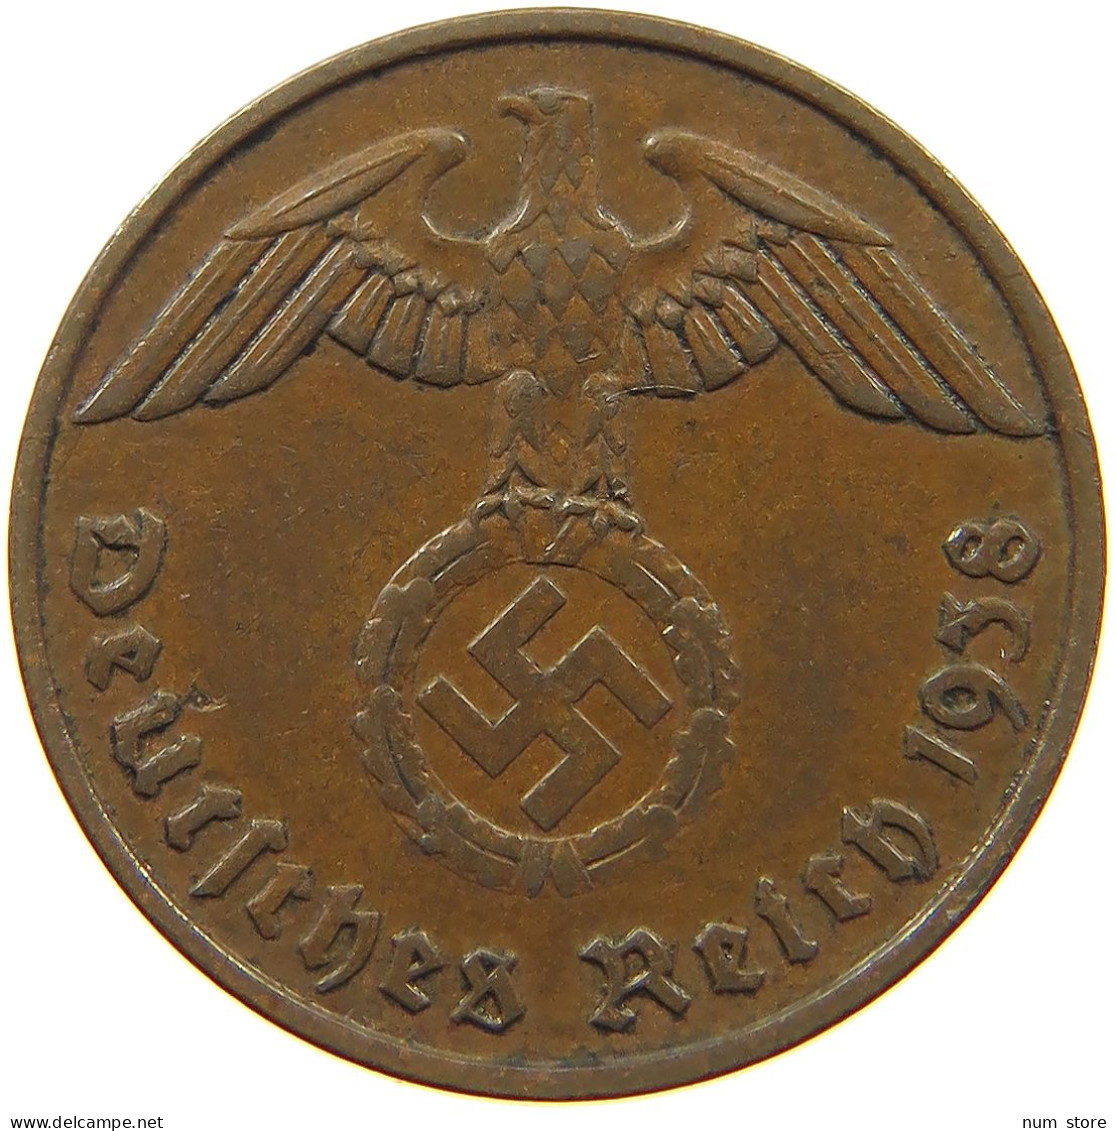 GERMANY 2 PFENNIG 1938 F #c083 0123 - 2 Reichspfennig